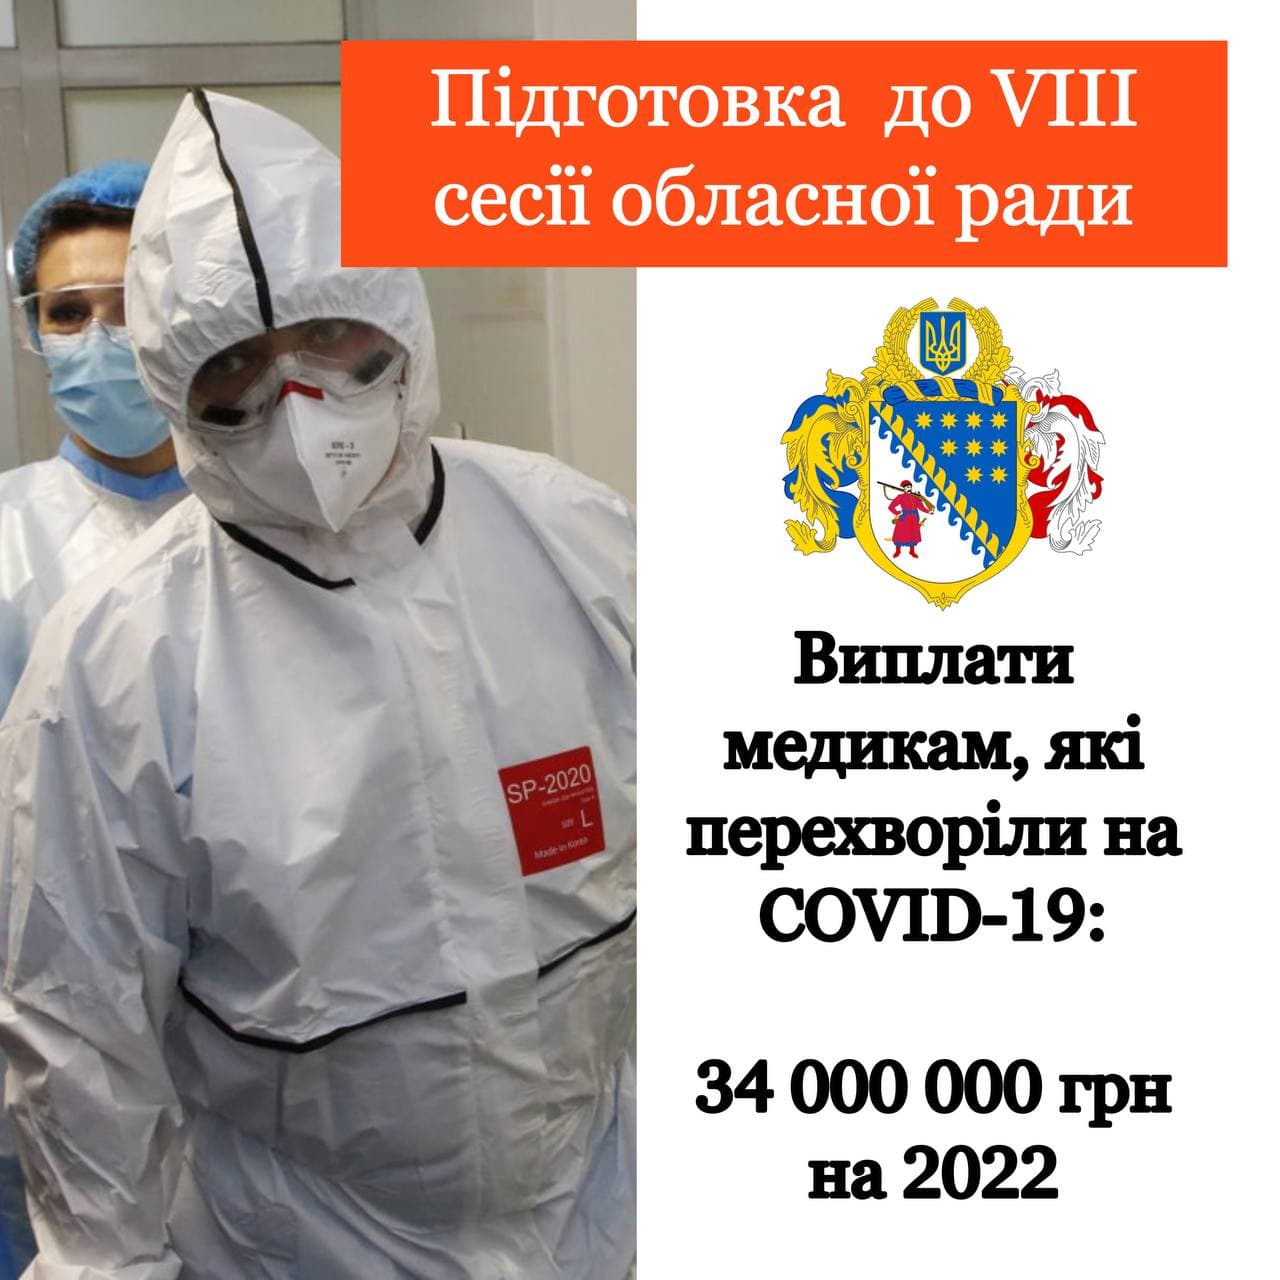 На фінансову підтримку медикам Дніпропетровщини у 2022 році планують спрямувати 34 млн грн.